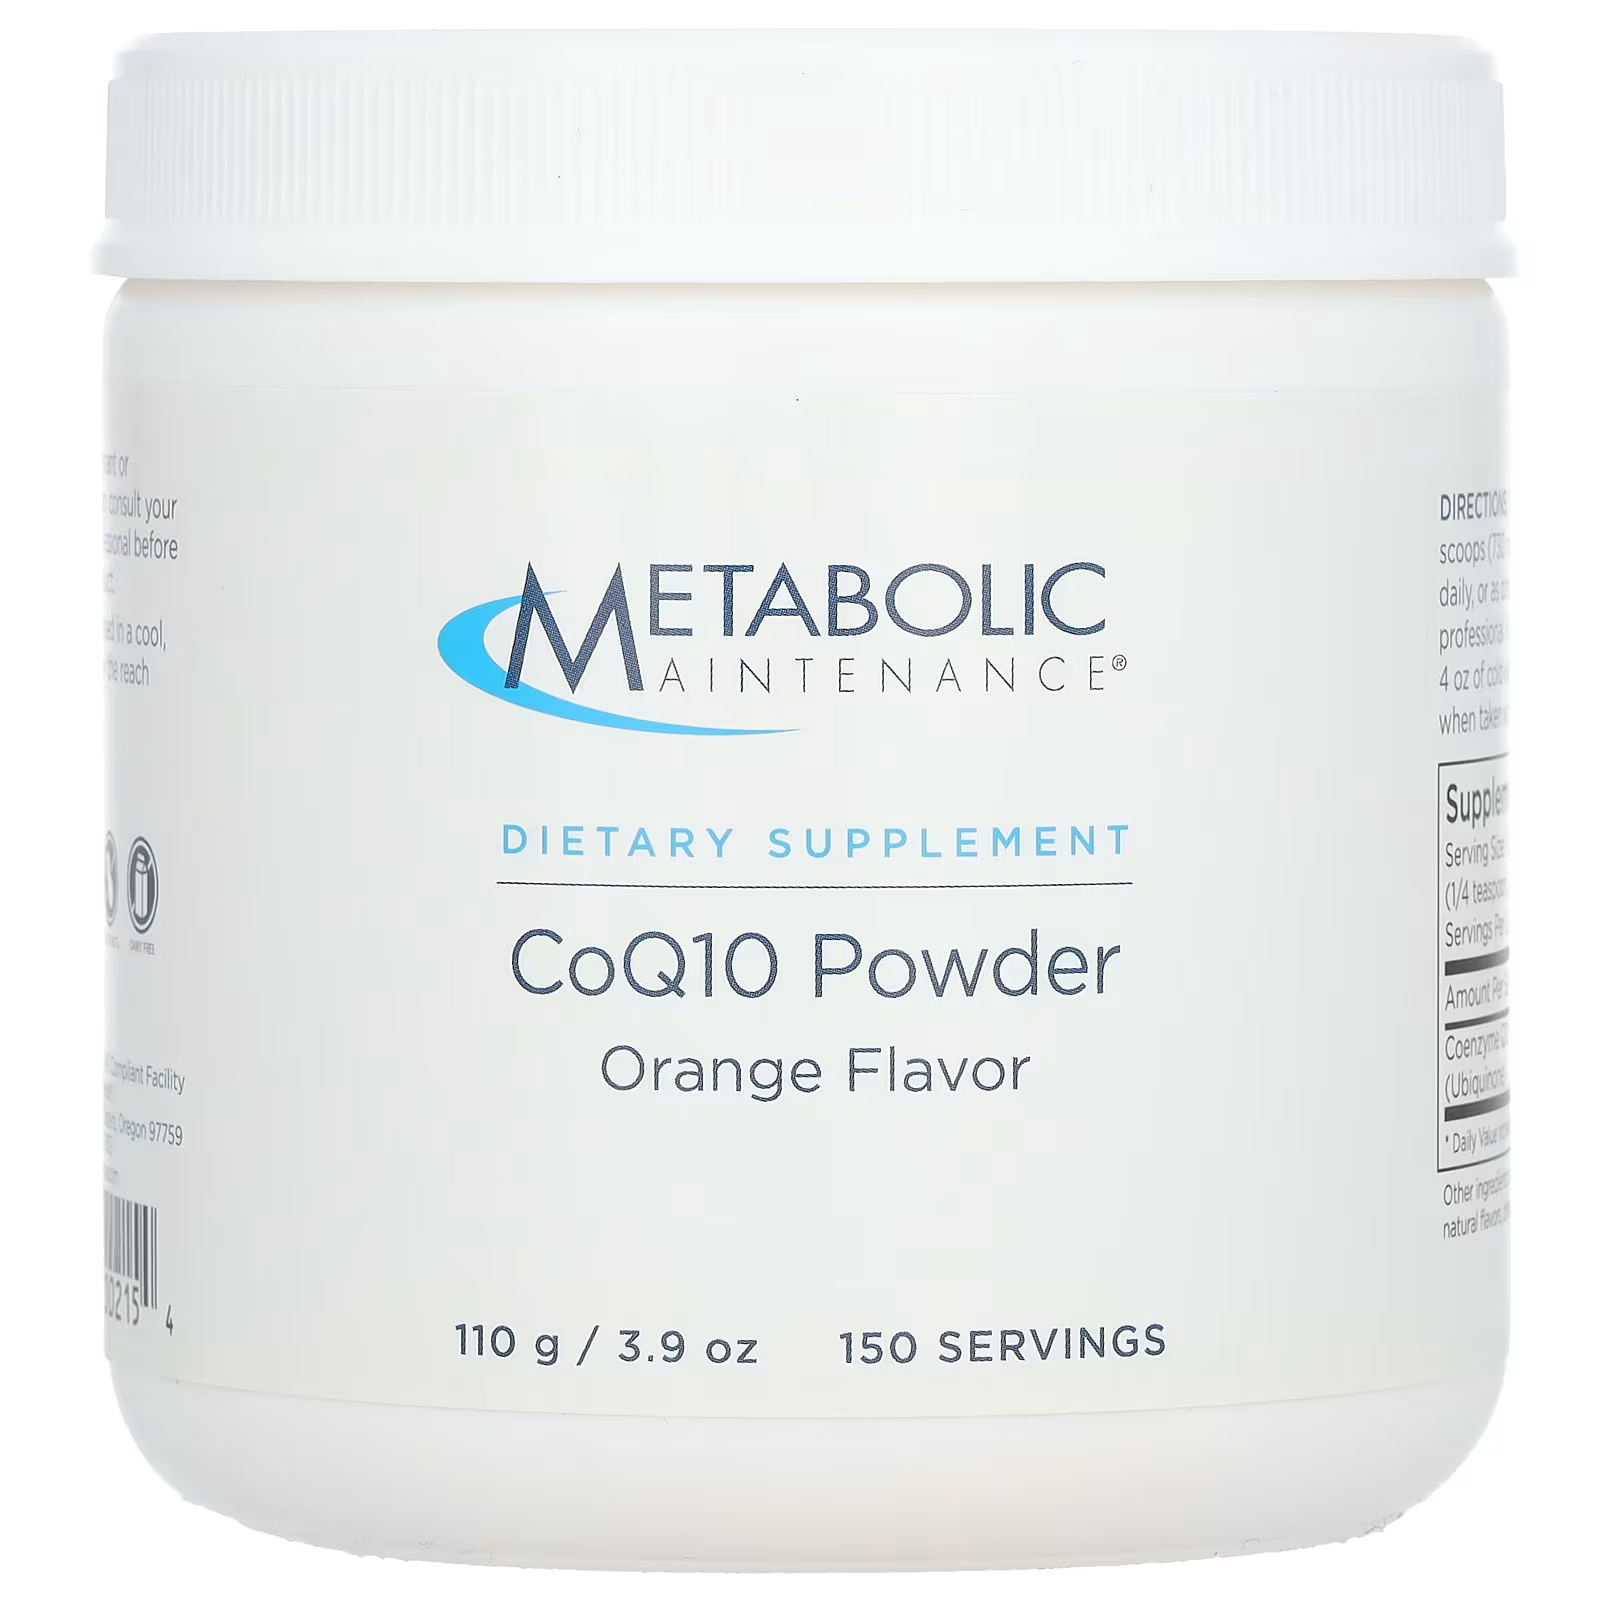 Коэнзим Q10 Metabolic Maintenance с апельсиновым вкусом, 110 г метаболическое обслуживание coq10 порошок апельсина 3 9 унции 110 г metabolic maintenance